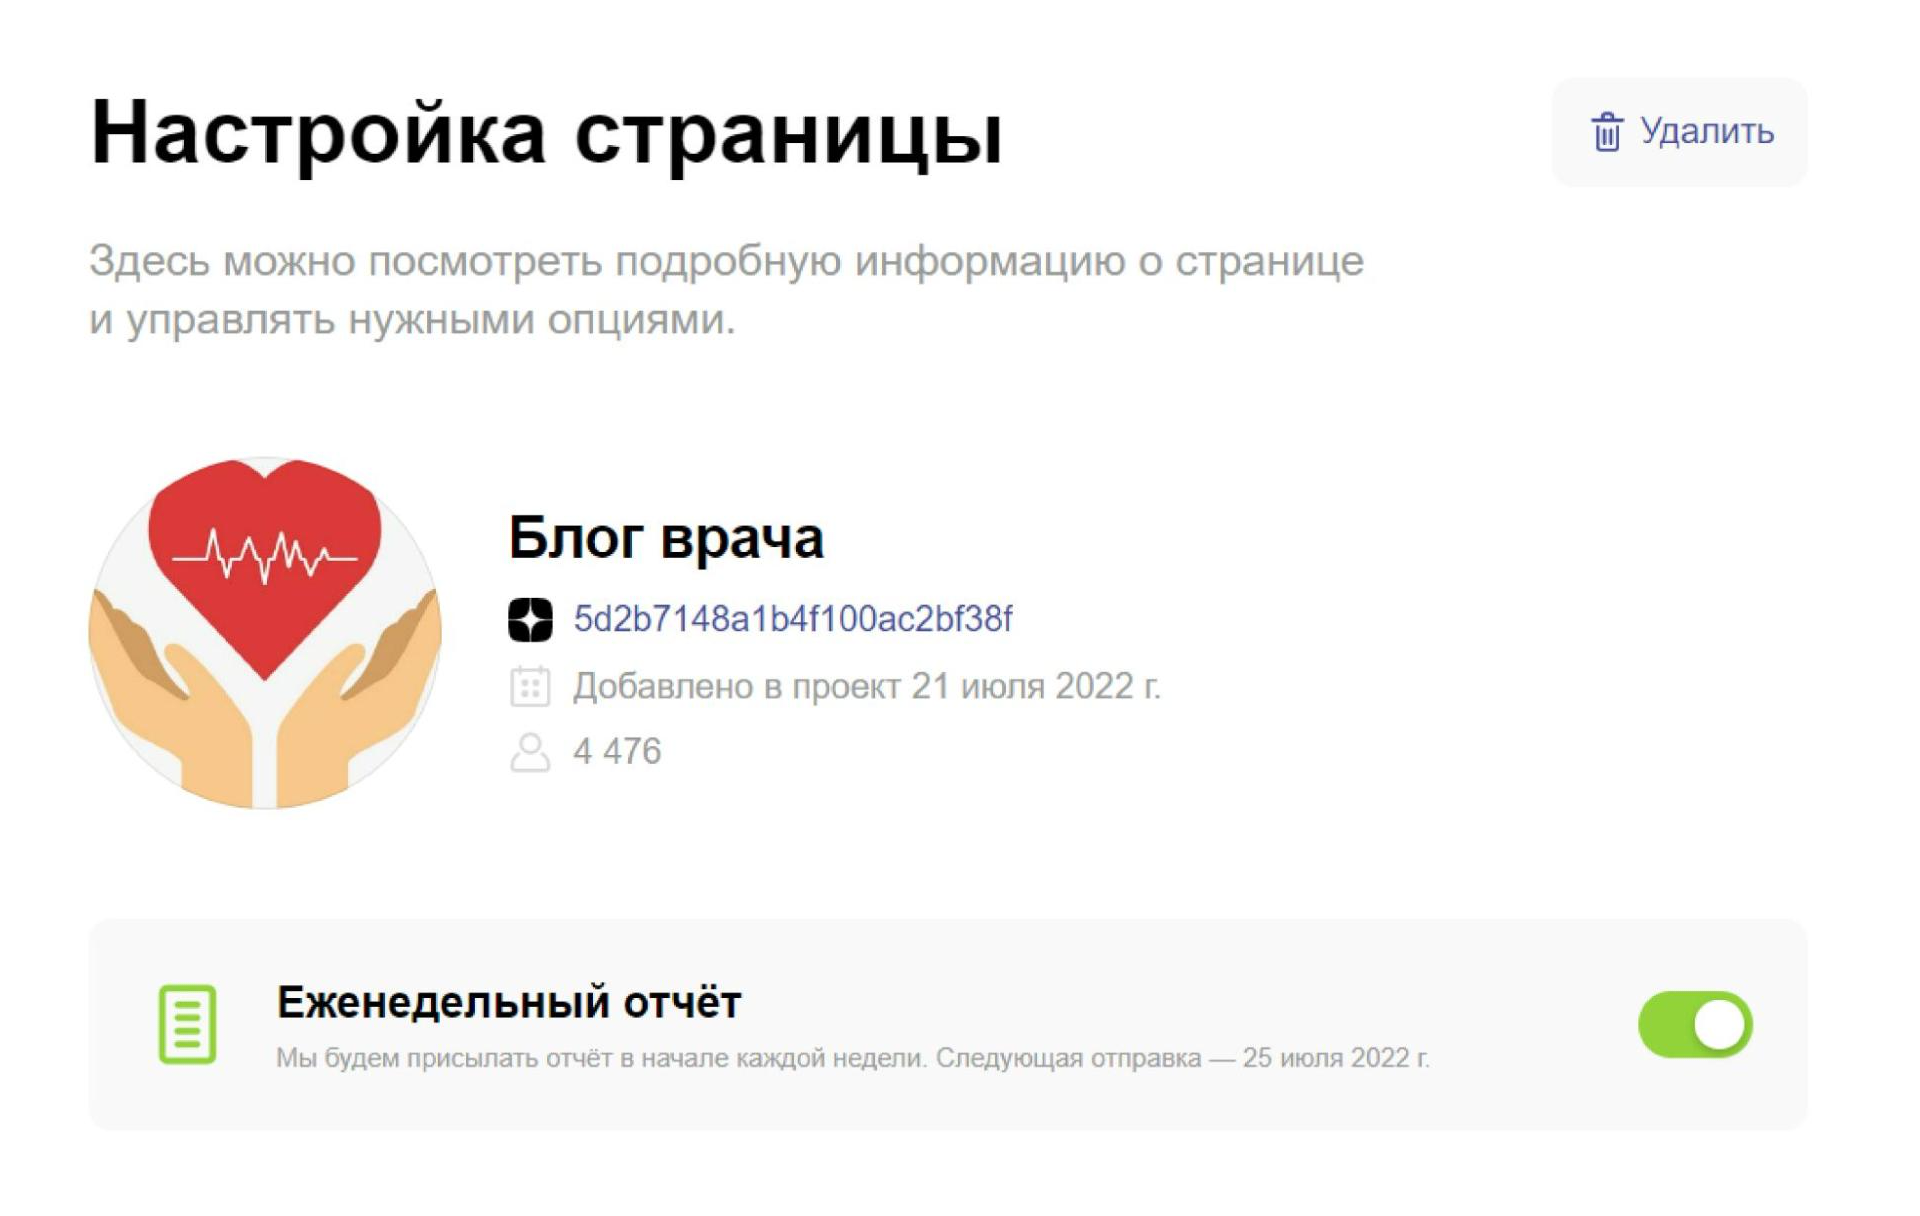 Отчёт по странице Яндекс.Дзен